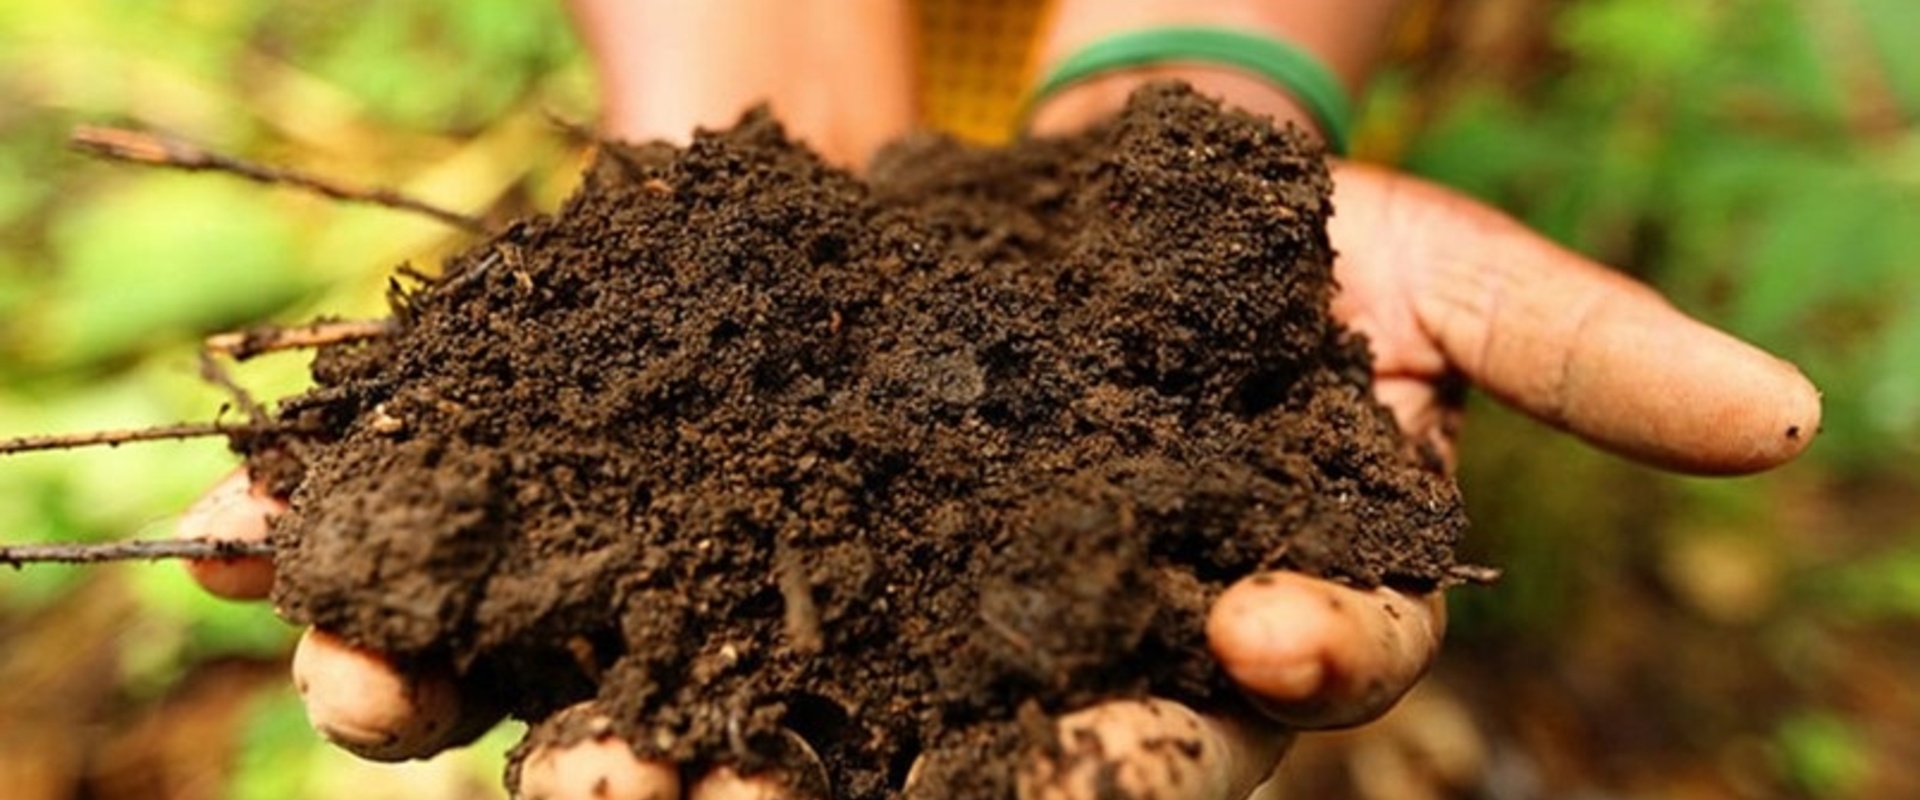 AgroProeftuin de Peel ontwikkelt tools voor gezonde bodem